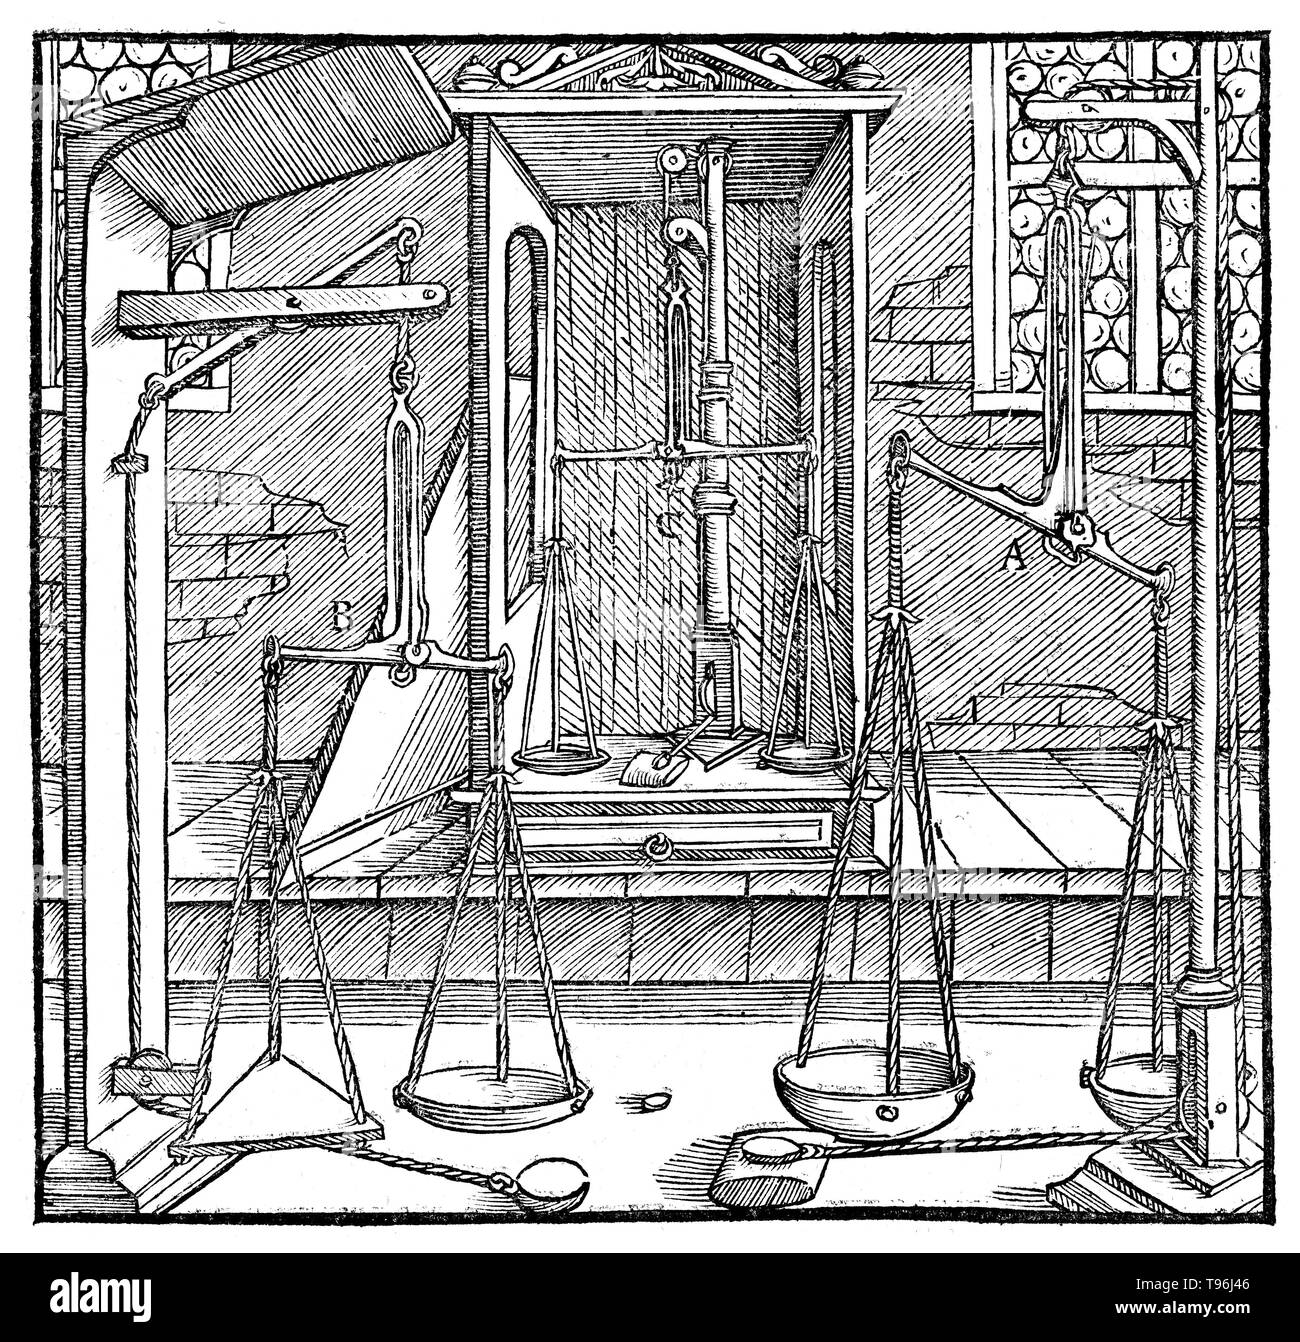 Gravure sur bois à partir De Re Metallica. Trois paires d'échelles. Georgius Agricola (Mars 24, 1494 - Novembre 21, 1555) était un scientifique et chercheur allemand, connu comme ''le père de la minéralogie''. En 1556 il publie son ouvrage De Re Metallica, un traité sur l'exploitation minière et la métallurgie extractive, de gravures sur bois illustrant les processus pour extraire des minerais depuis le sol et le métal du minerai, et les nombreuses utilisations des moulins à eau dans l'exploitation minière. Banque D'Images